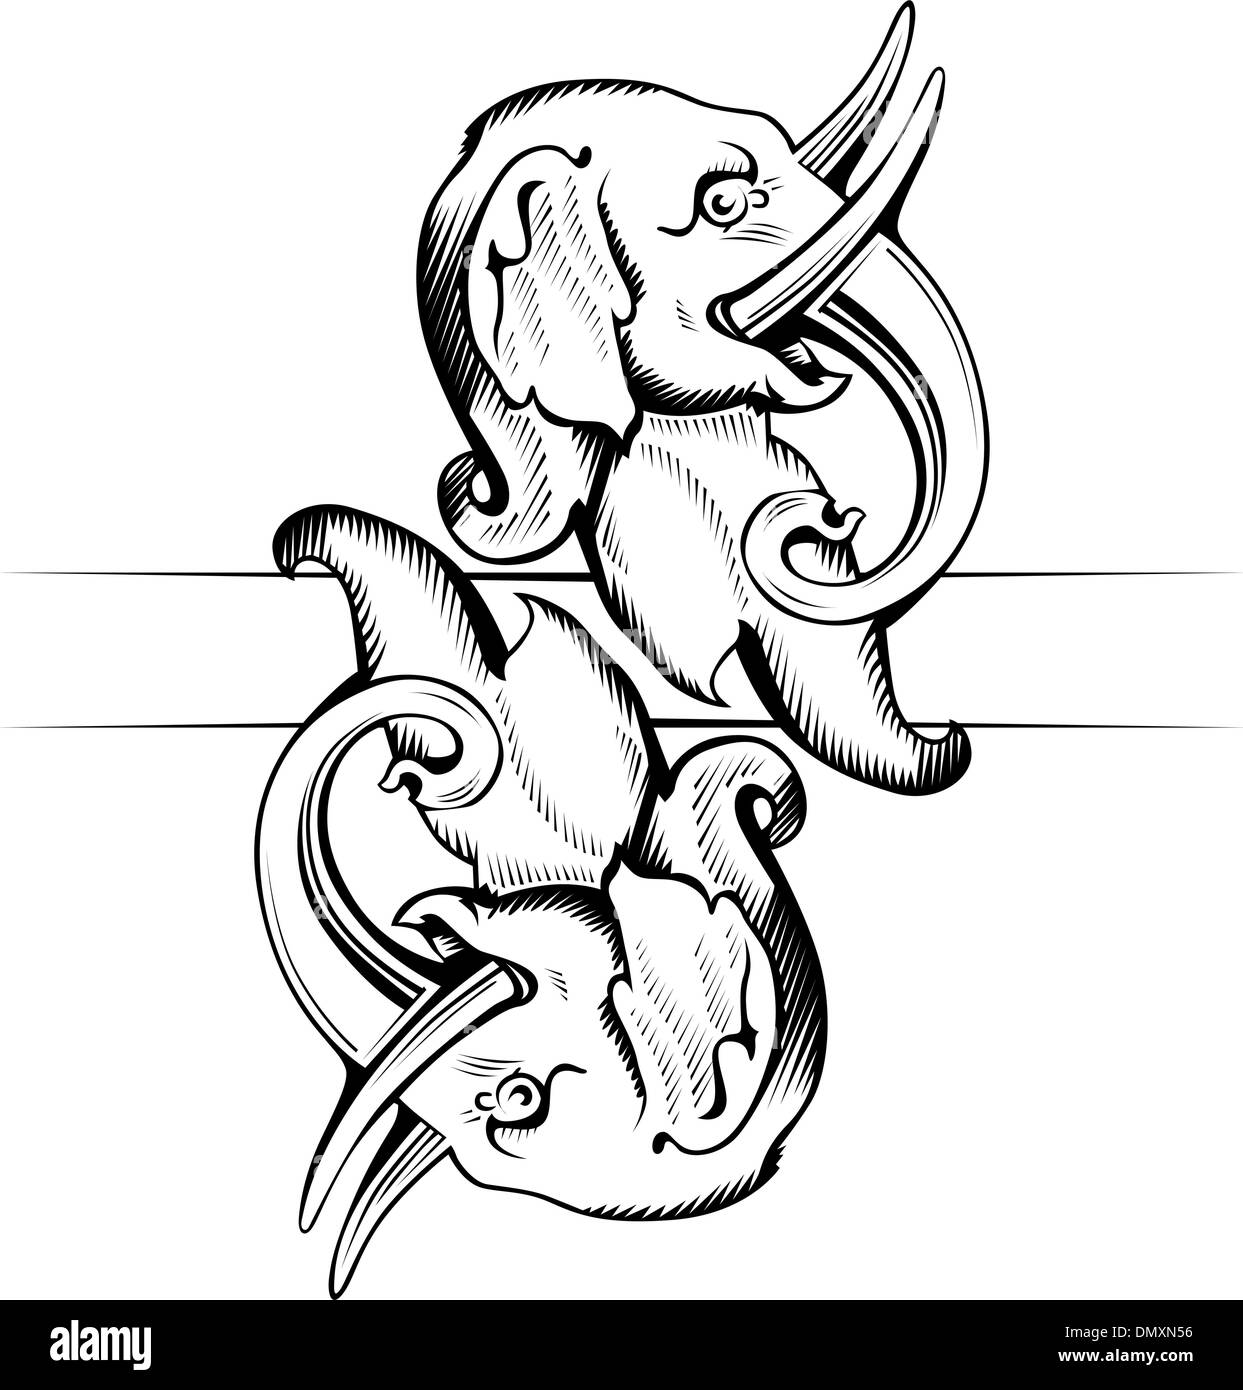 elephant head icon Stock Vector